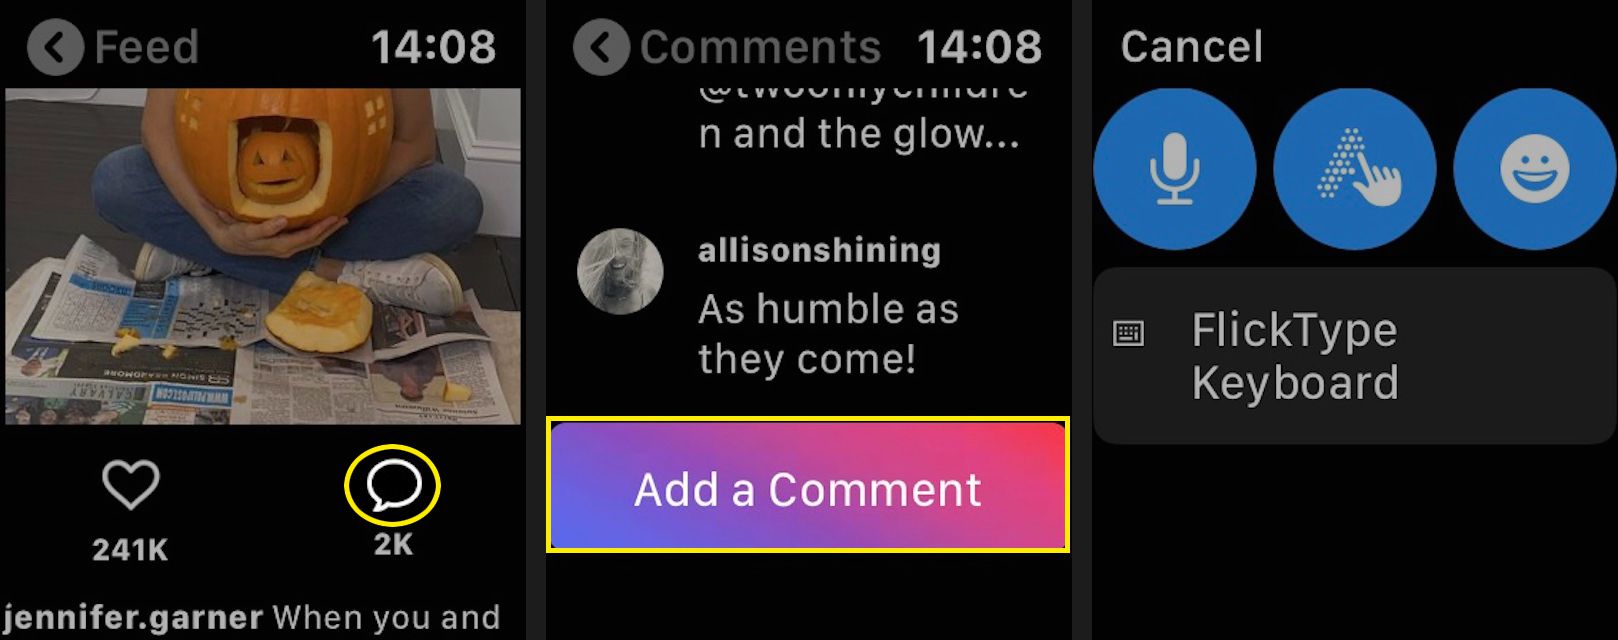 Chcete-li přidat komentář, klepněte na bublinu řeči, přejděte dolů a klepněte na Přidat komentář.  Budete přesměrováni na obrazovku s možnostmi komentáře.